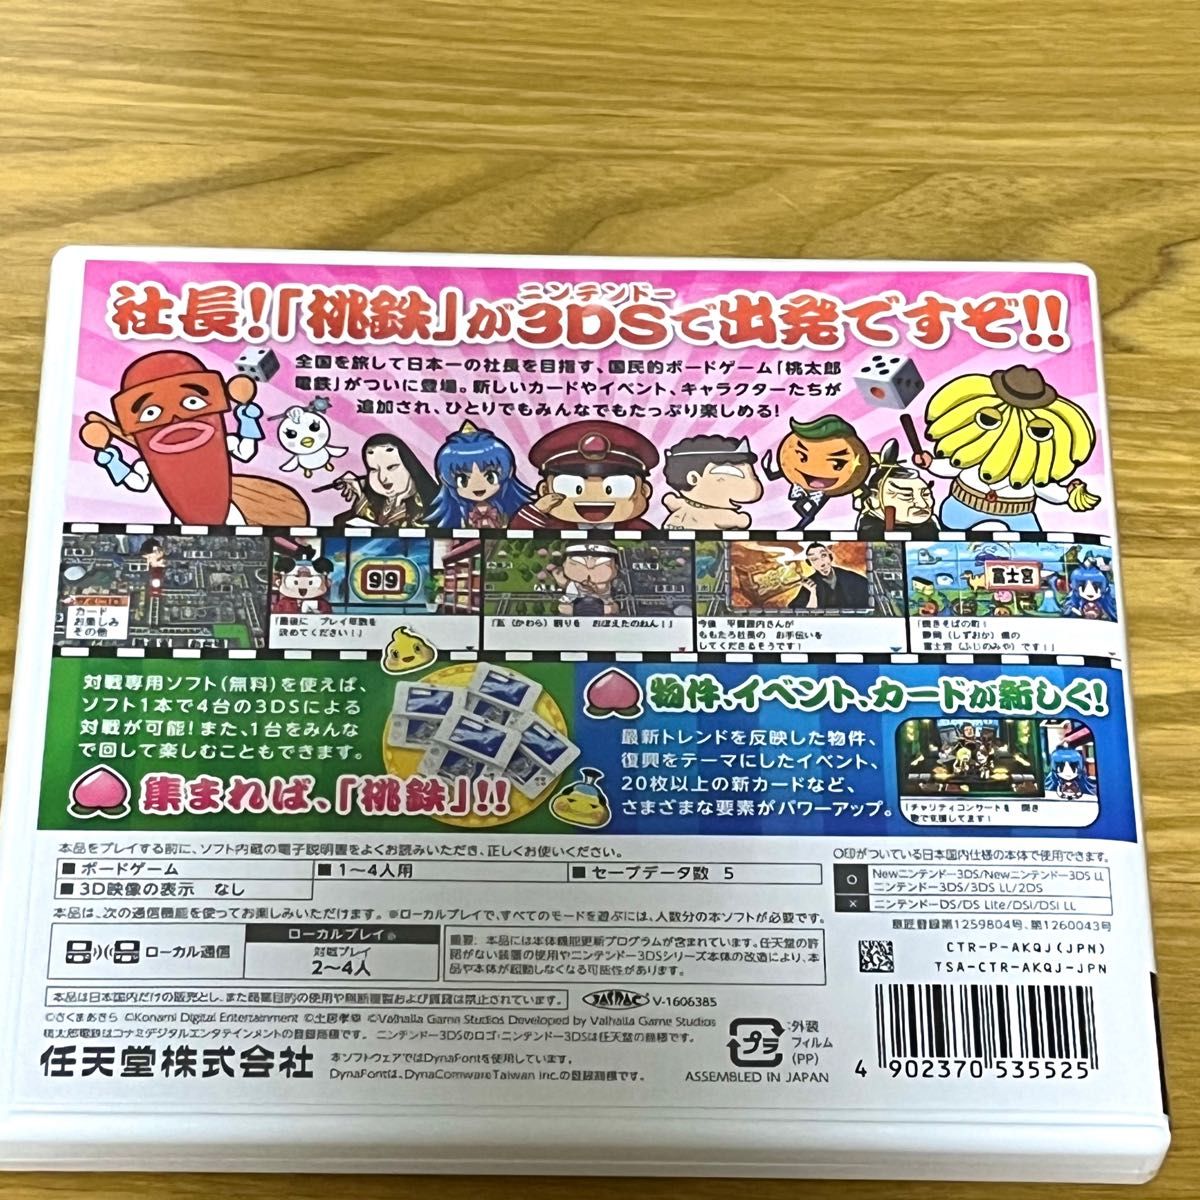 【3DS】 桃太郎電鉄2017 たちあがれ日本!! 桃太郎電鉄 任天堂 3DSソフト ニンテンドー3DS 動作確認済